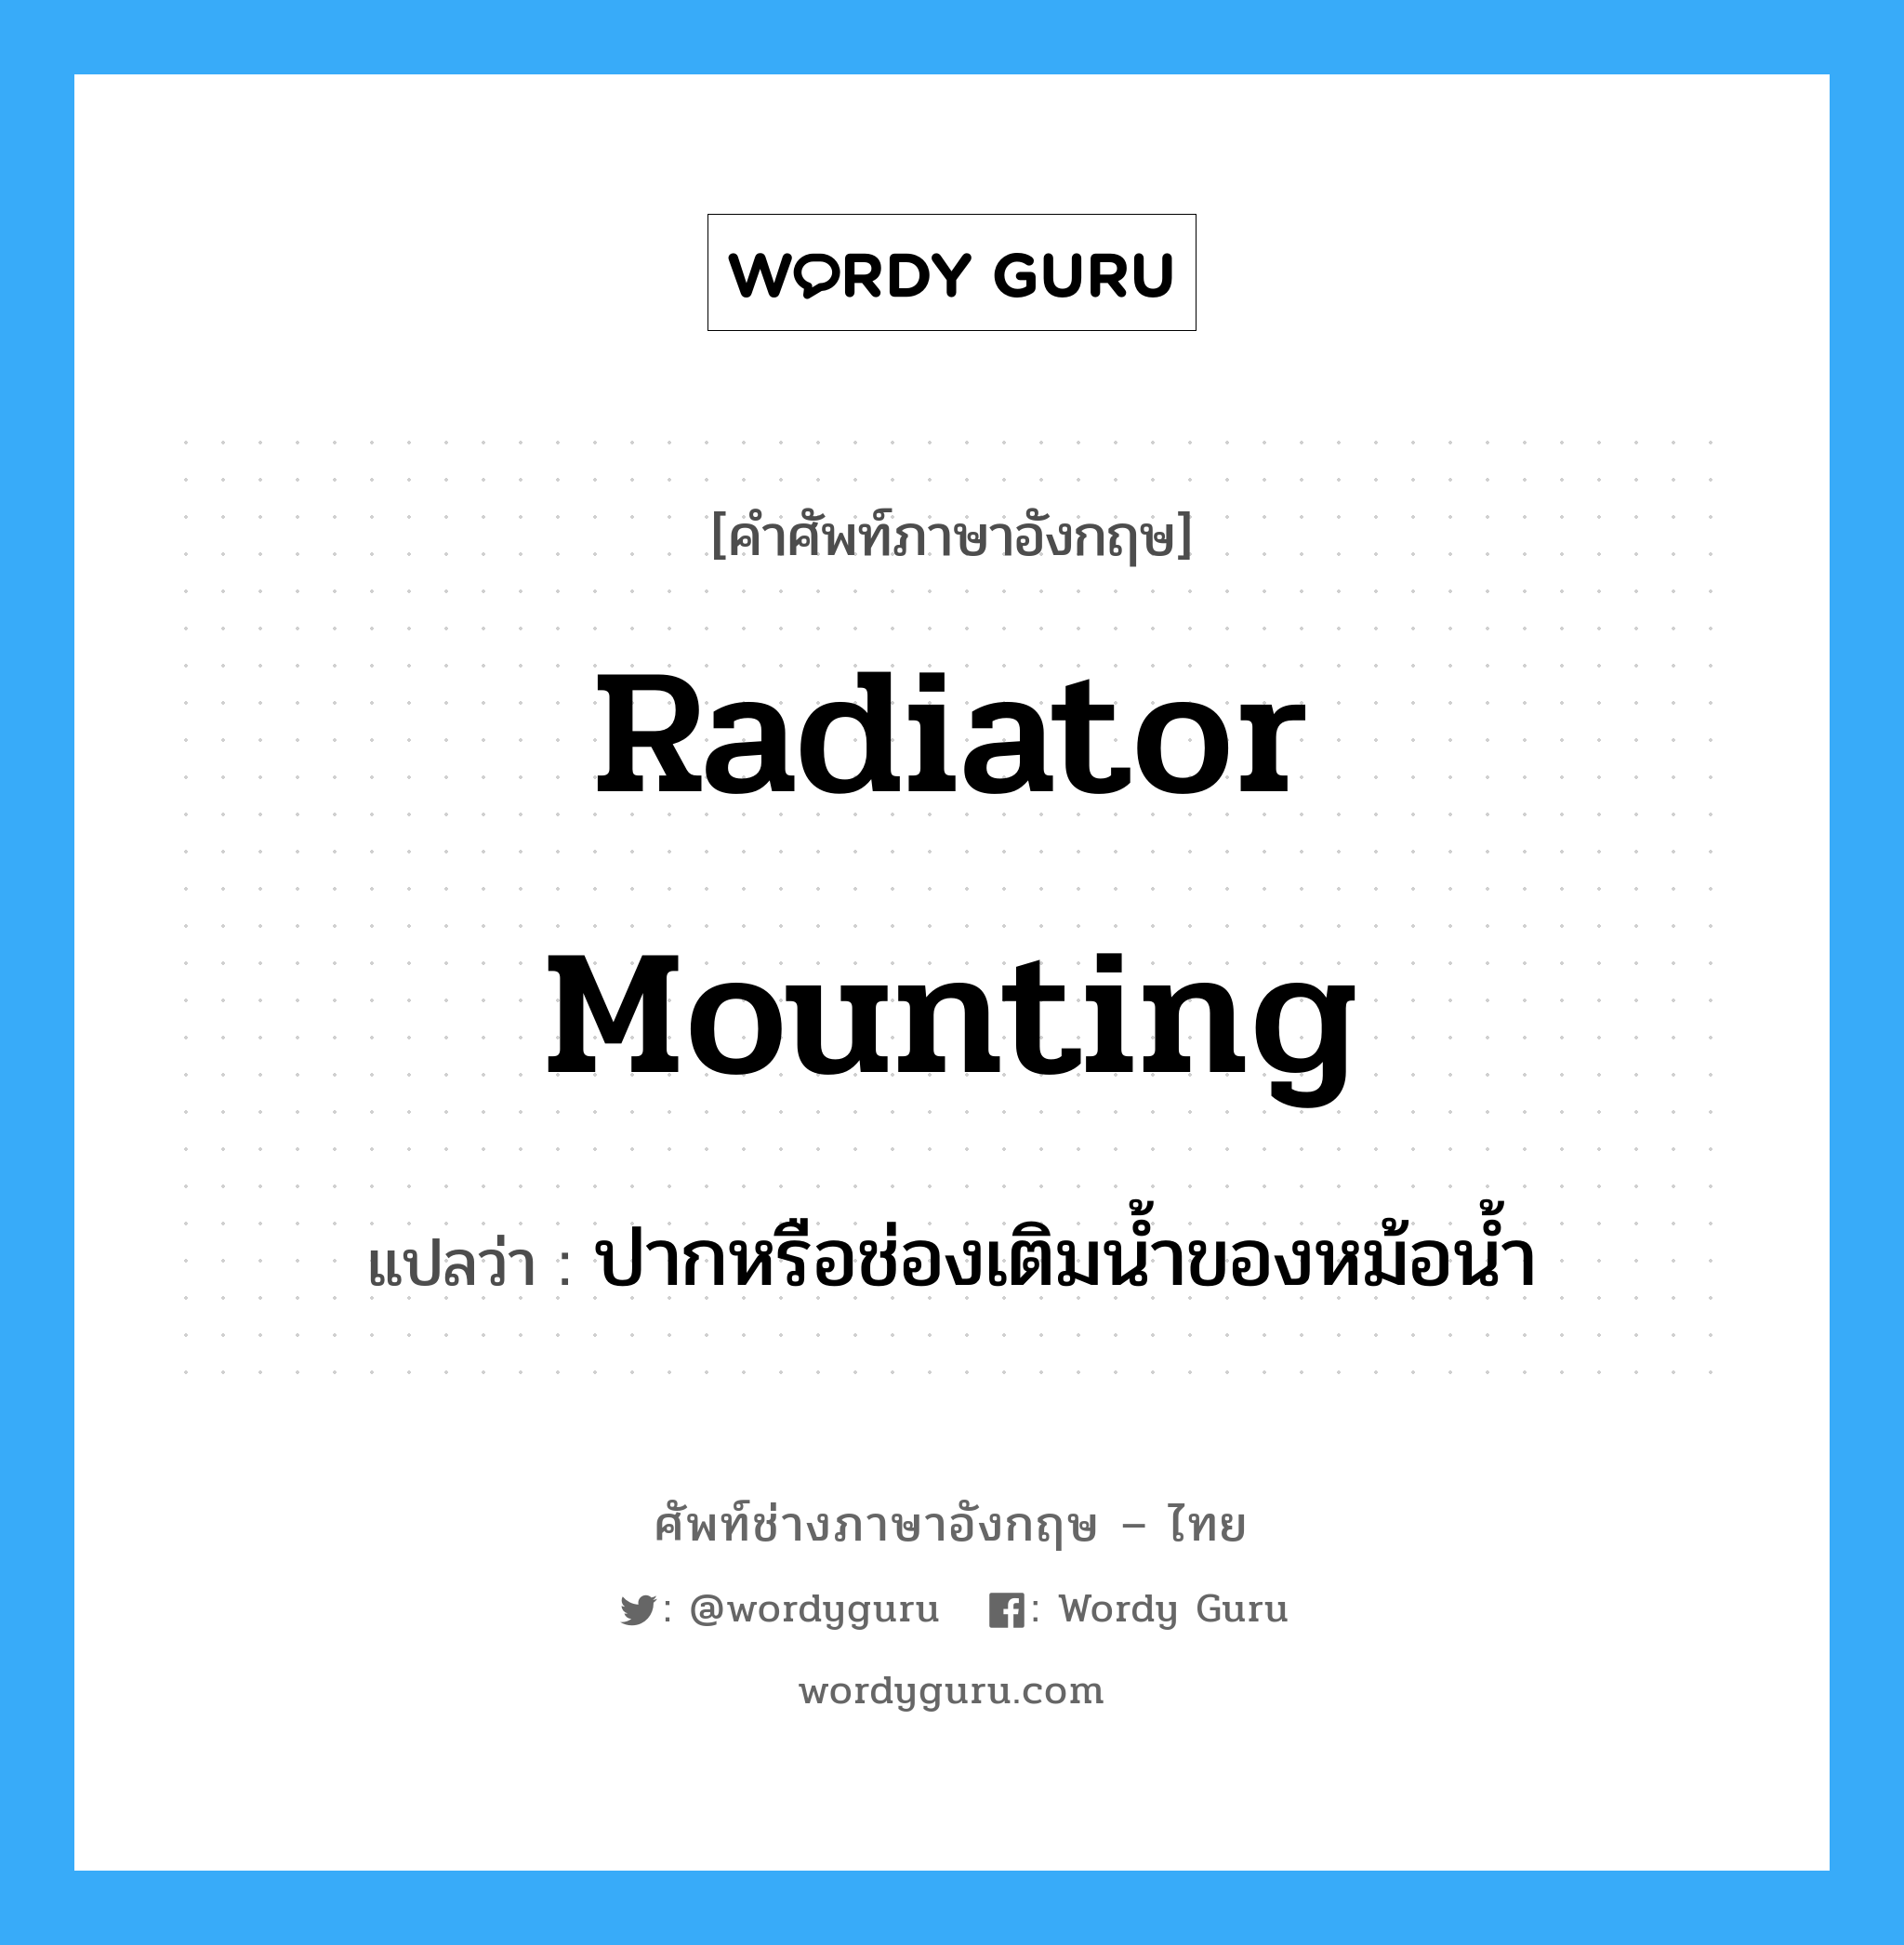 radiator mounting แปลว่า?, คำศัพท์ช่างภาษาอังกฤษ - ไทย radiator mounting คำศัพท์ภาษาอังกฤษ radiator mounting แปลว่า ปากหรือช่องเติมน้ำของหม้อน้ำ